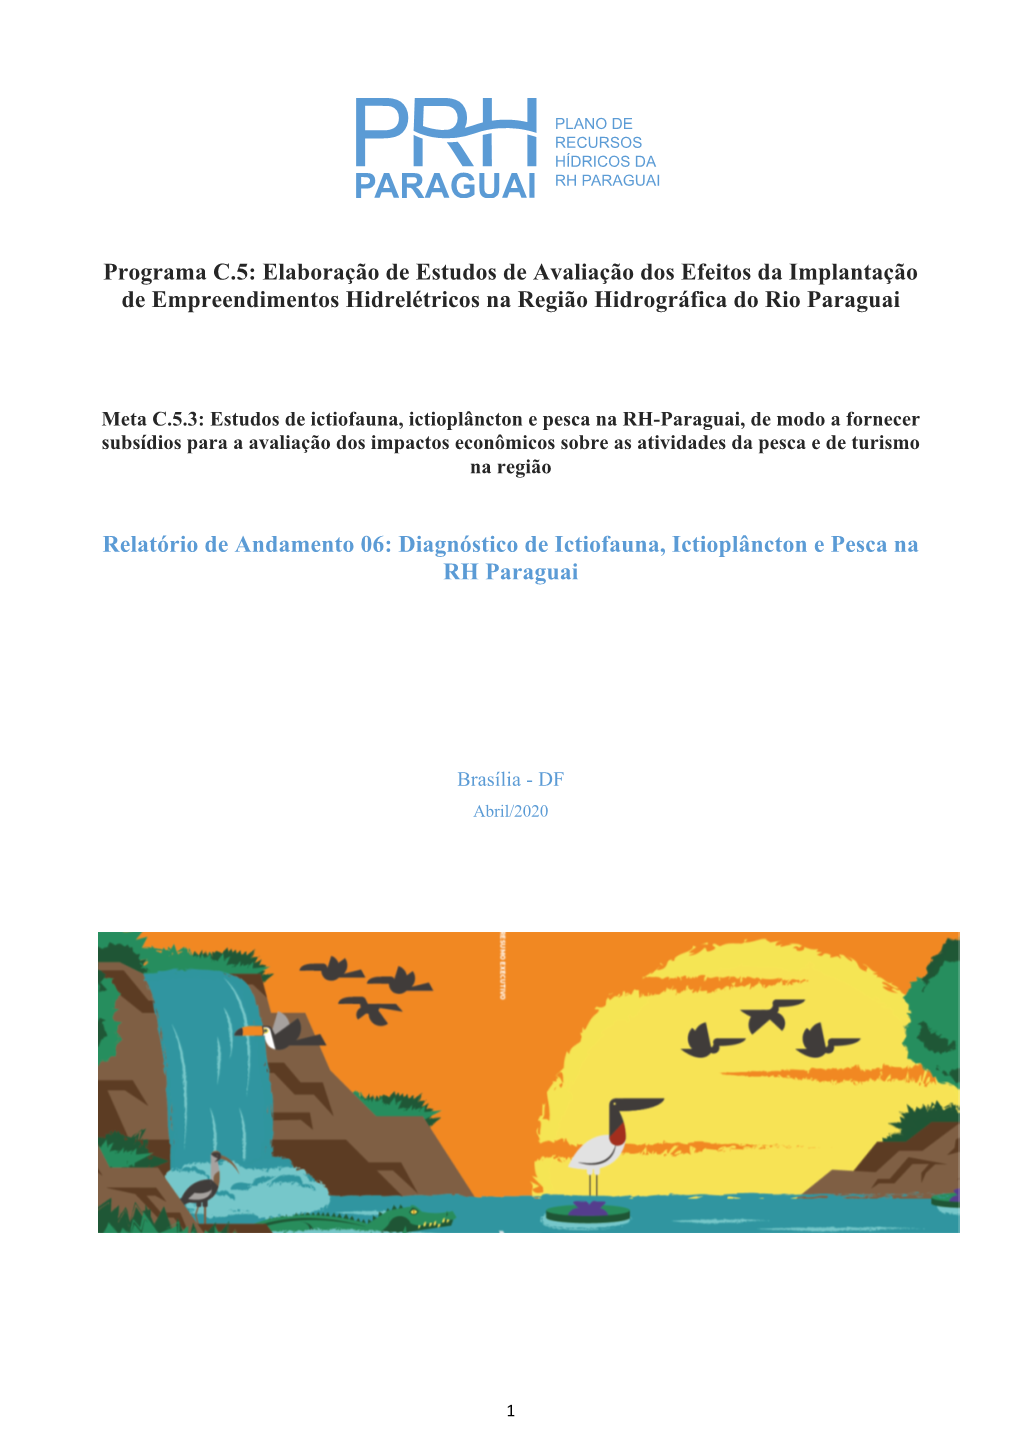 Programa C.5: Elaboração De Estudos De Avaliação Dos Efeitos Da Implantação De Empreendimentos Hidrelétricos Na Região Hidrográfica Do Rio Paraguai